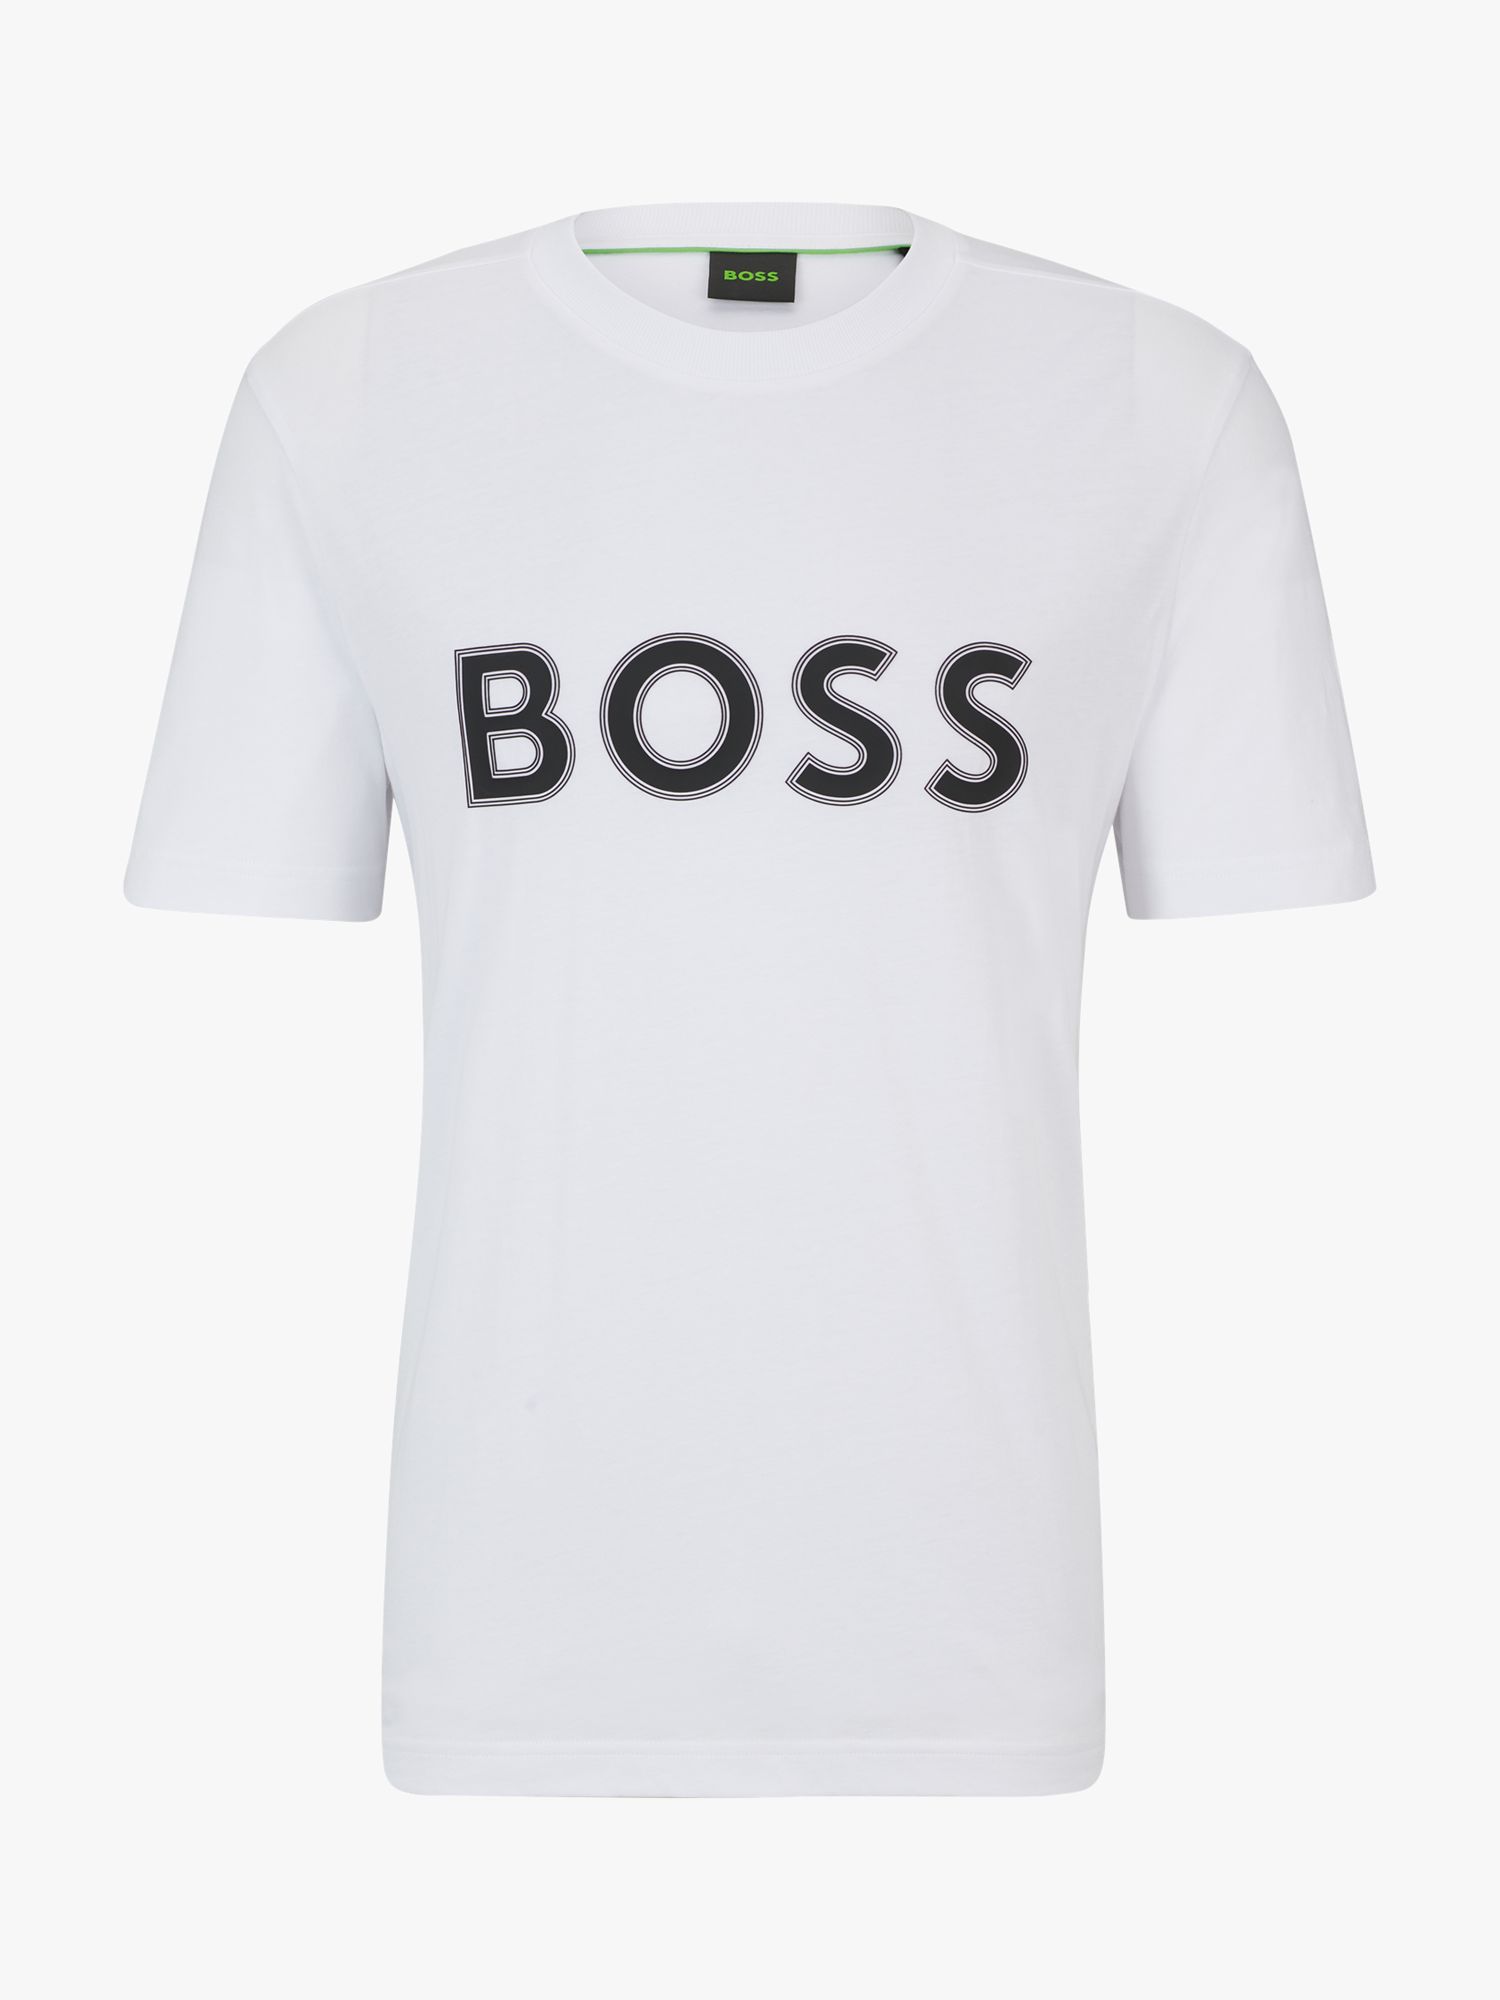 BOSS Large Logo Cotton T-Shirt, White at John Lewis & Partners